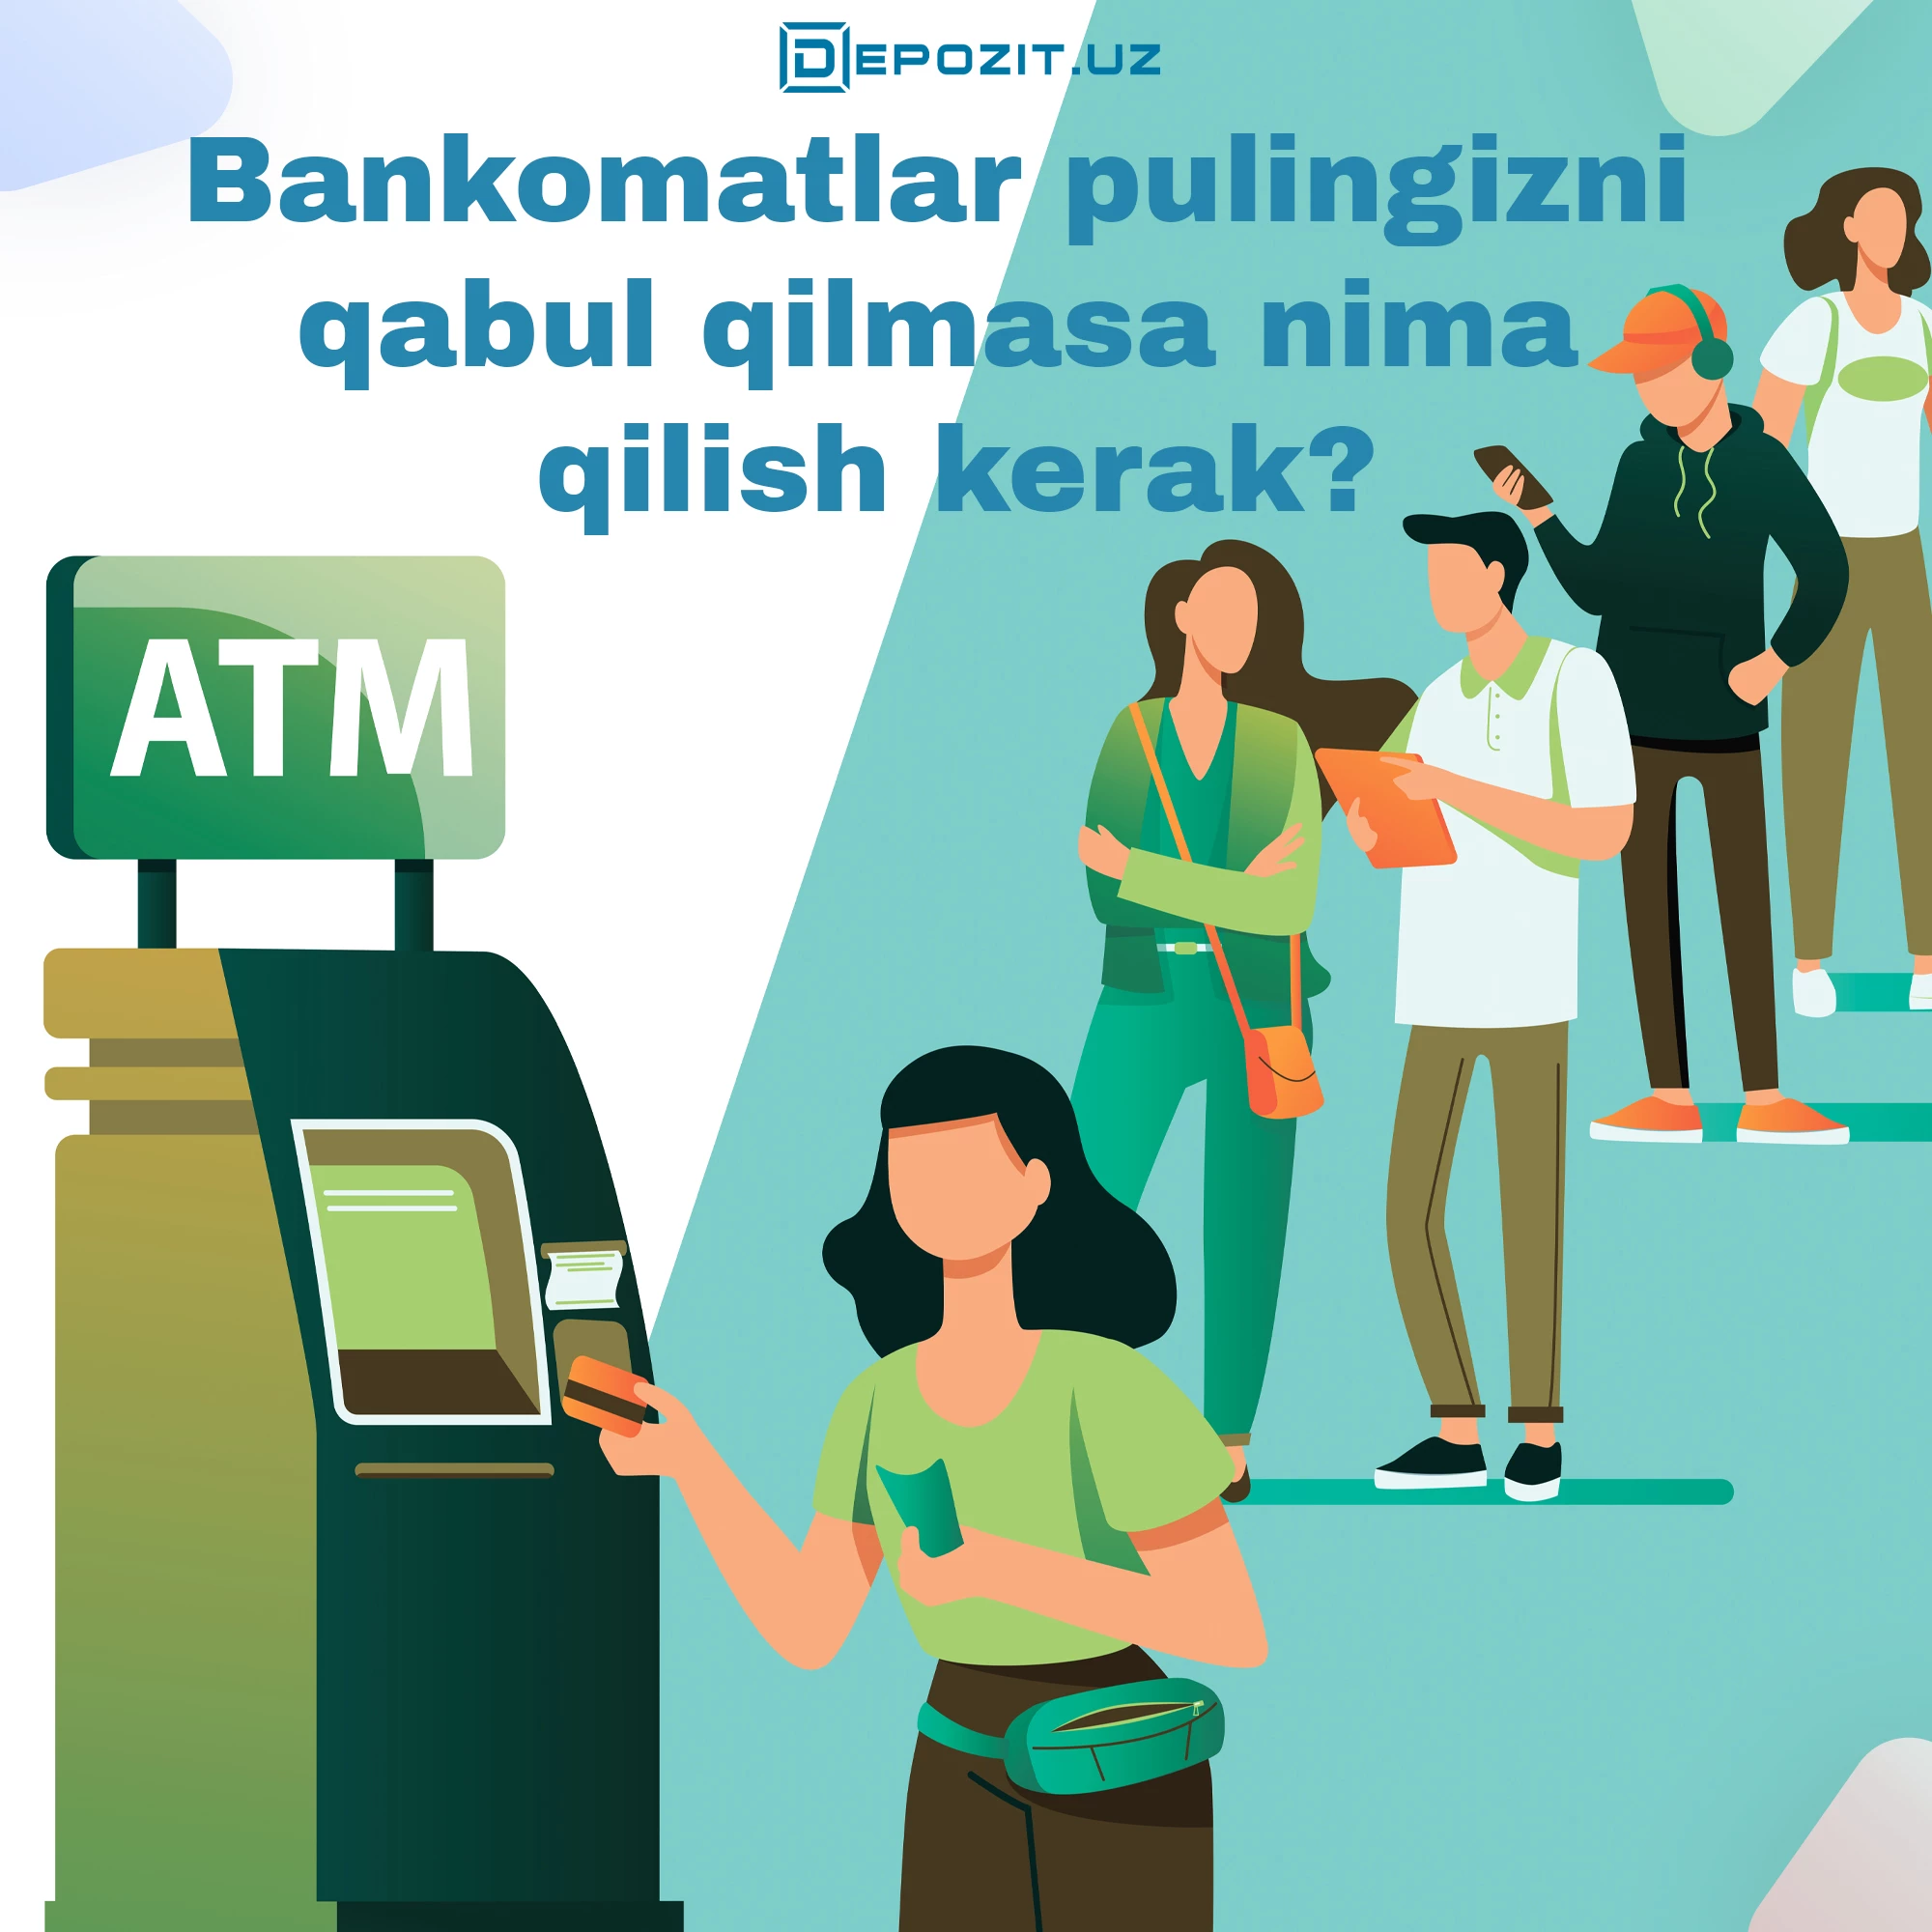 Что делать, если банкомат не принимает купюры?